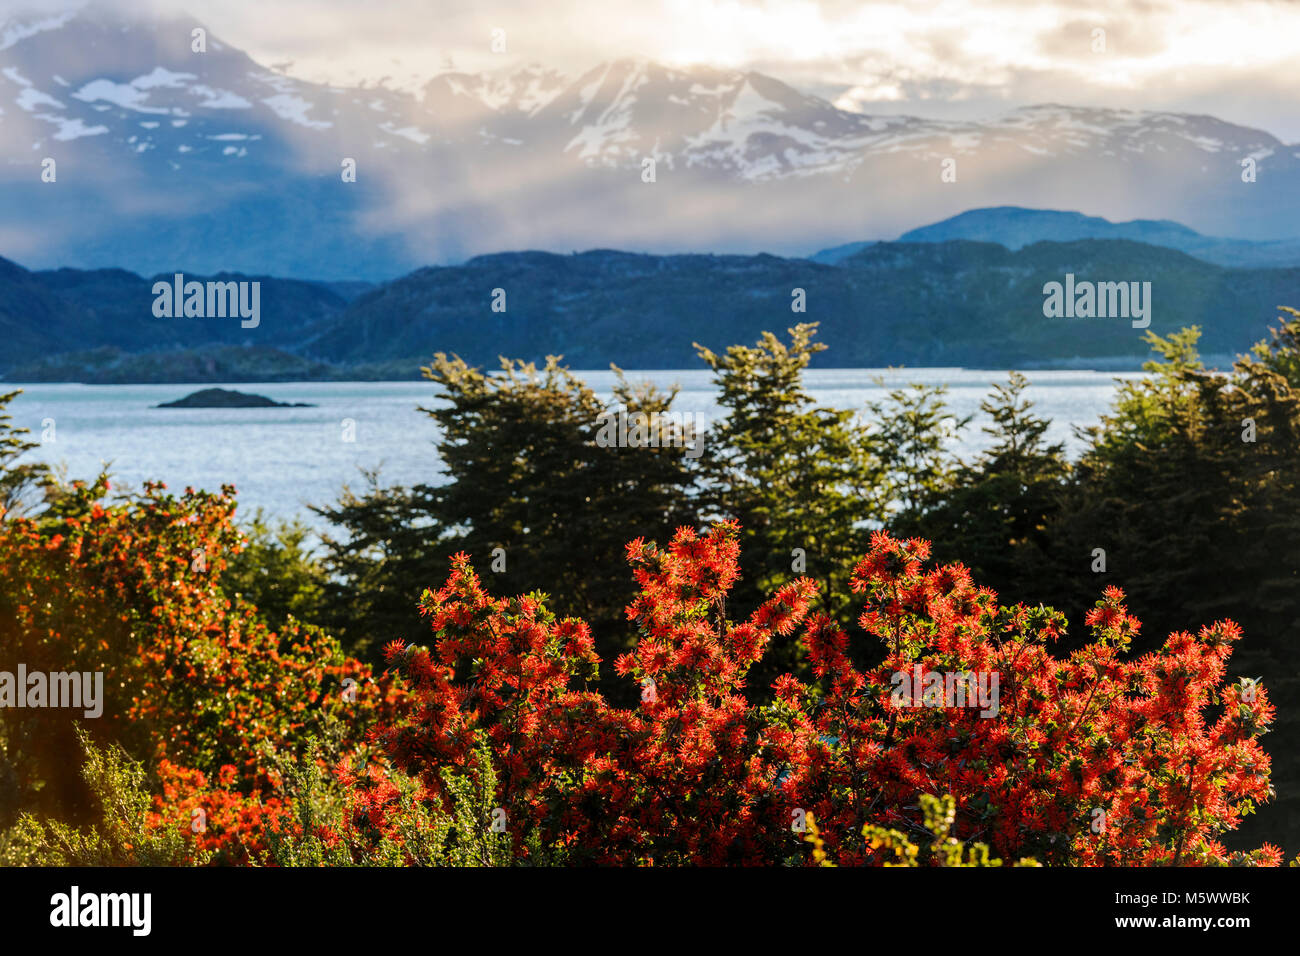 Fiorì rosso fuoco cilena bush; Embothrium coccineum; infiorescenza; Lago Nordenskjold; Cordillera Paine al di là; vista dal Refugio Cuernos; Torres de Foto Stock